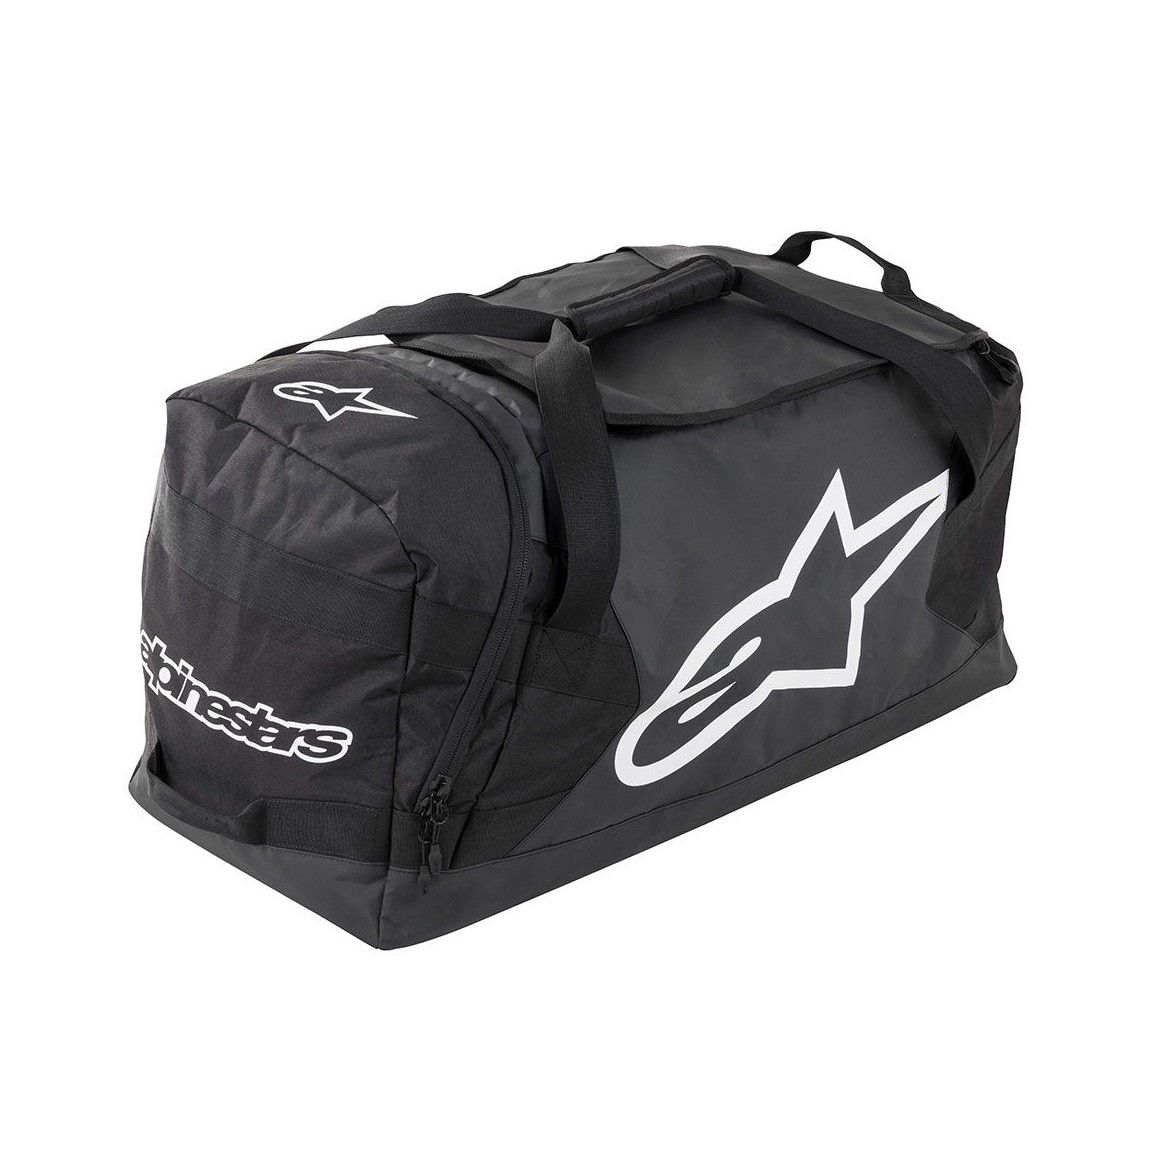 Alpinestars 6106018-140-o-s Goanna Duffle Bag, One Size